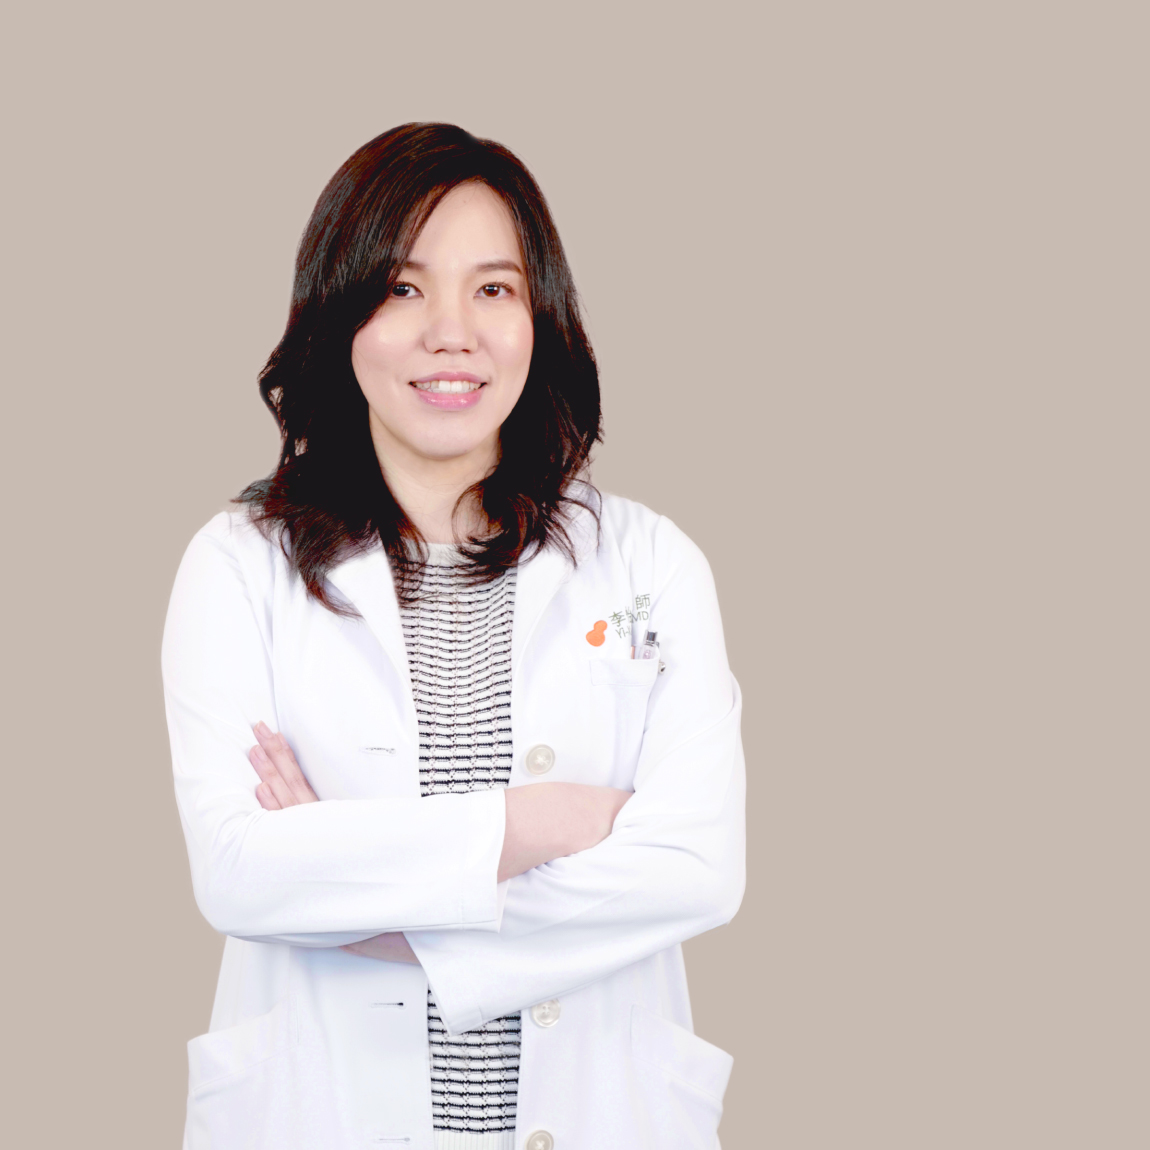 李怡萱  Dr. リー Yi-Xuan Lee, MD, PhD.